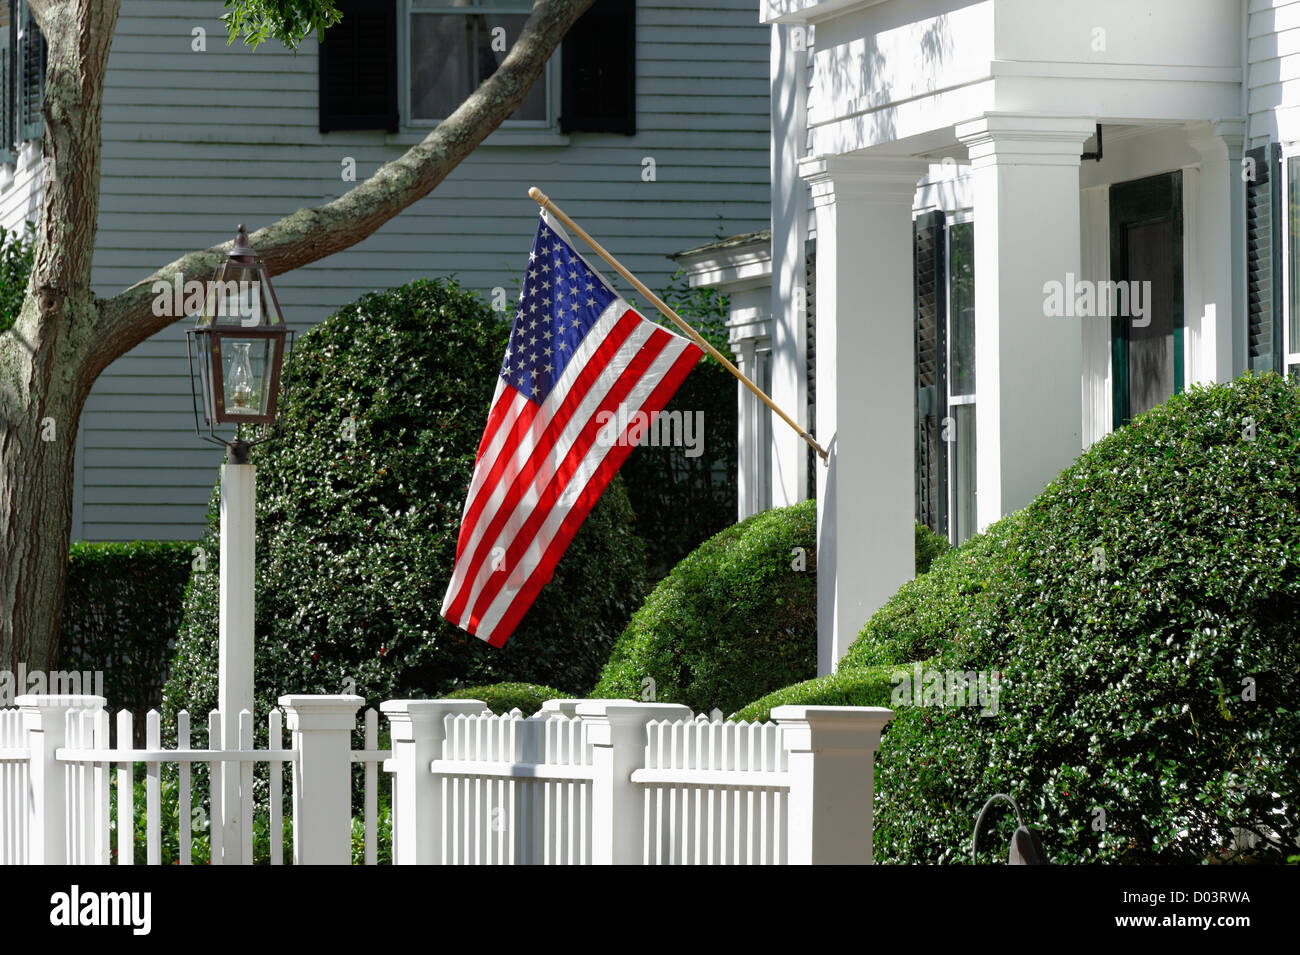 Home, Edgartown, Martha's Vineyard, Massachusetts, USA Stock Photo